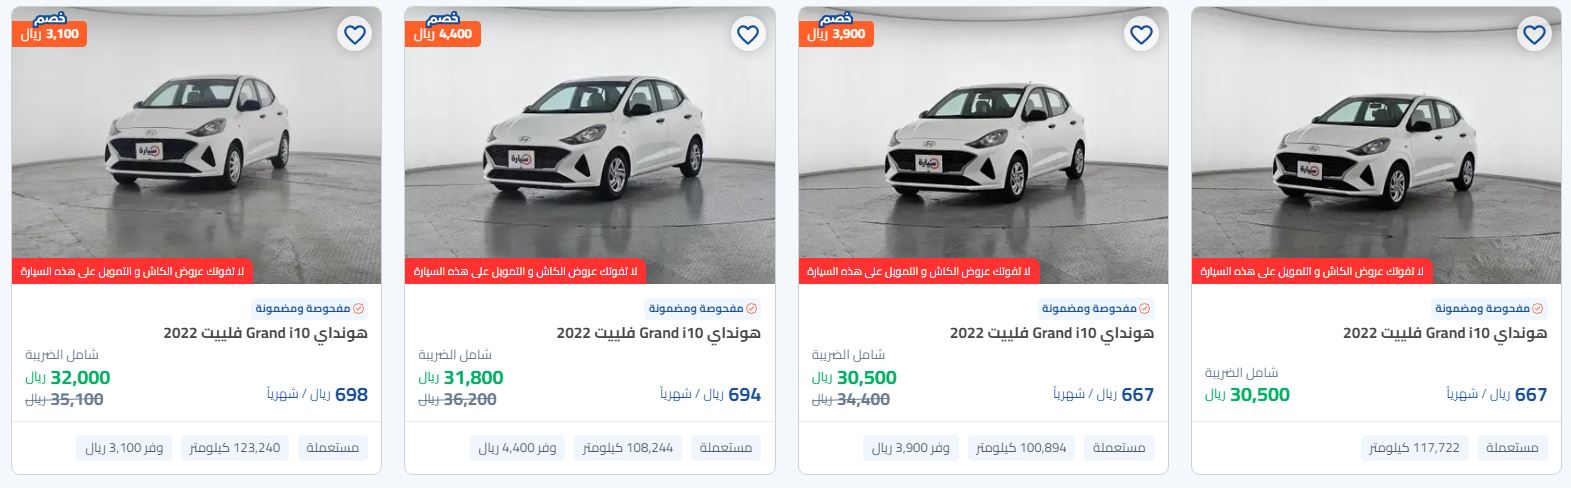 عروض رمضان 2024 سيارات من syarah